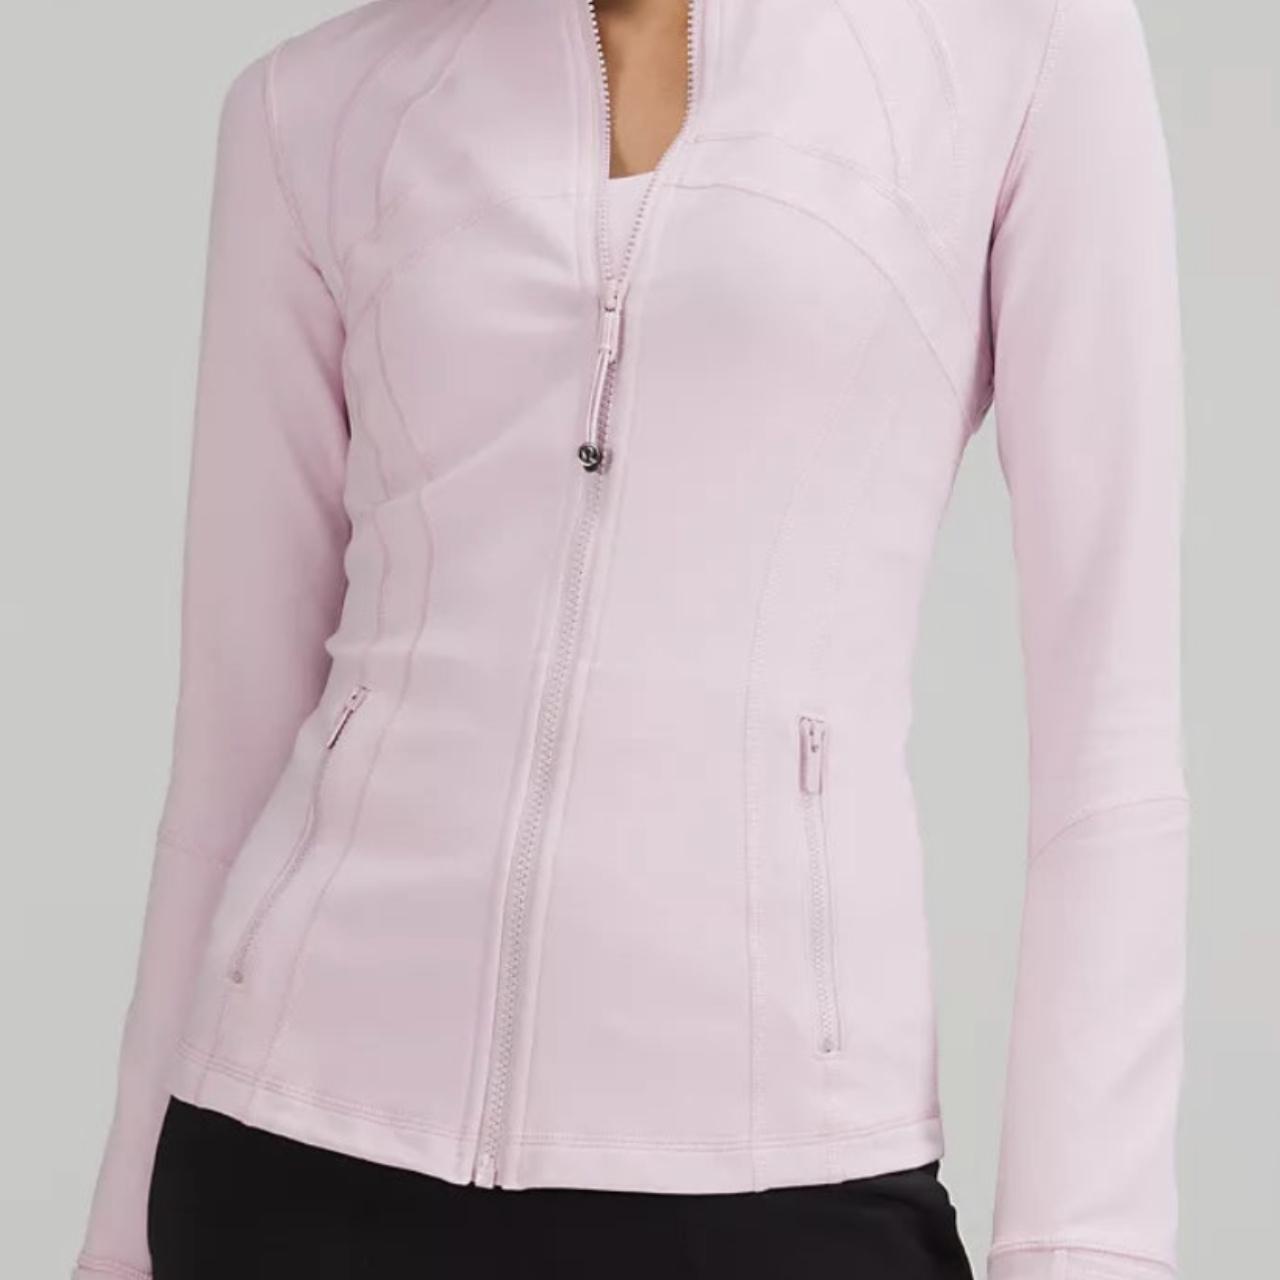 NWT Lululemon Define Jacket *Luon Pink Peony Size 8 Ireland